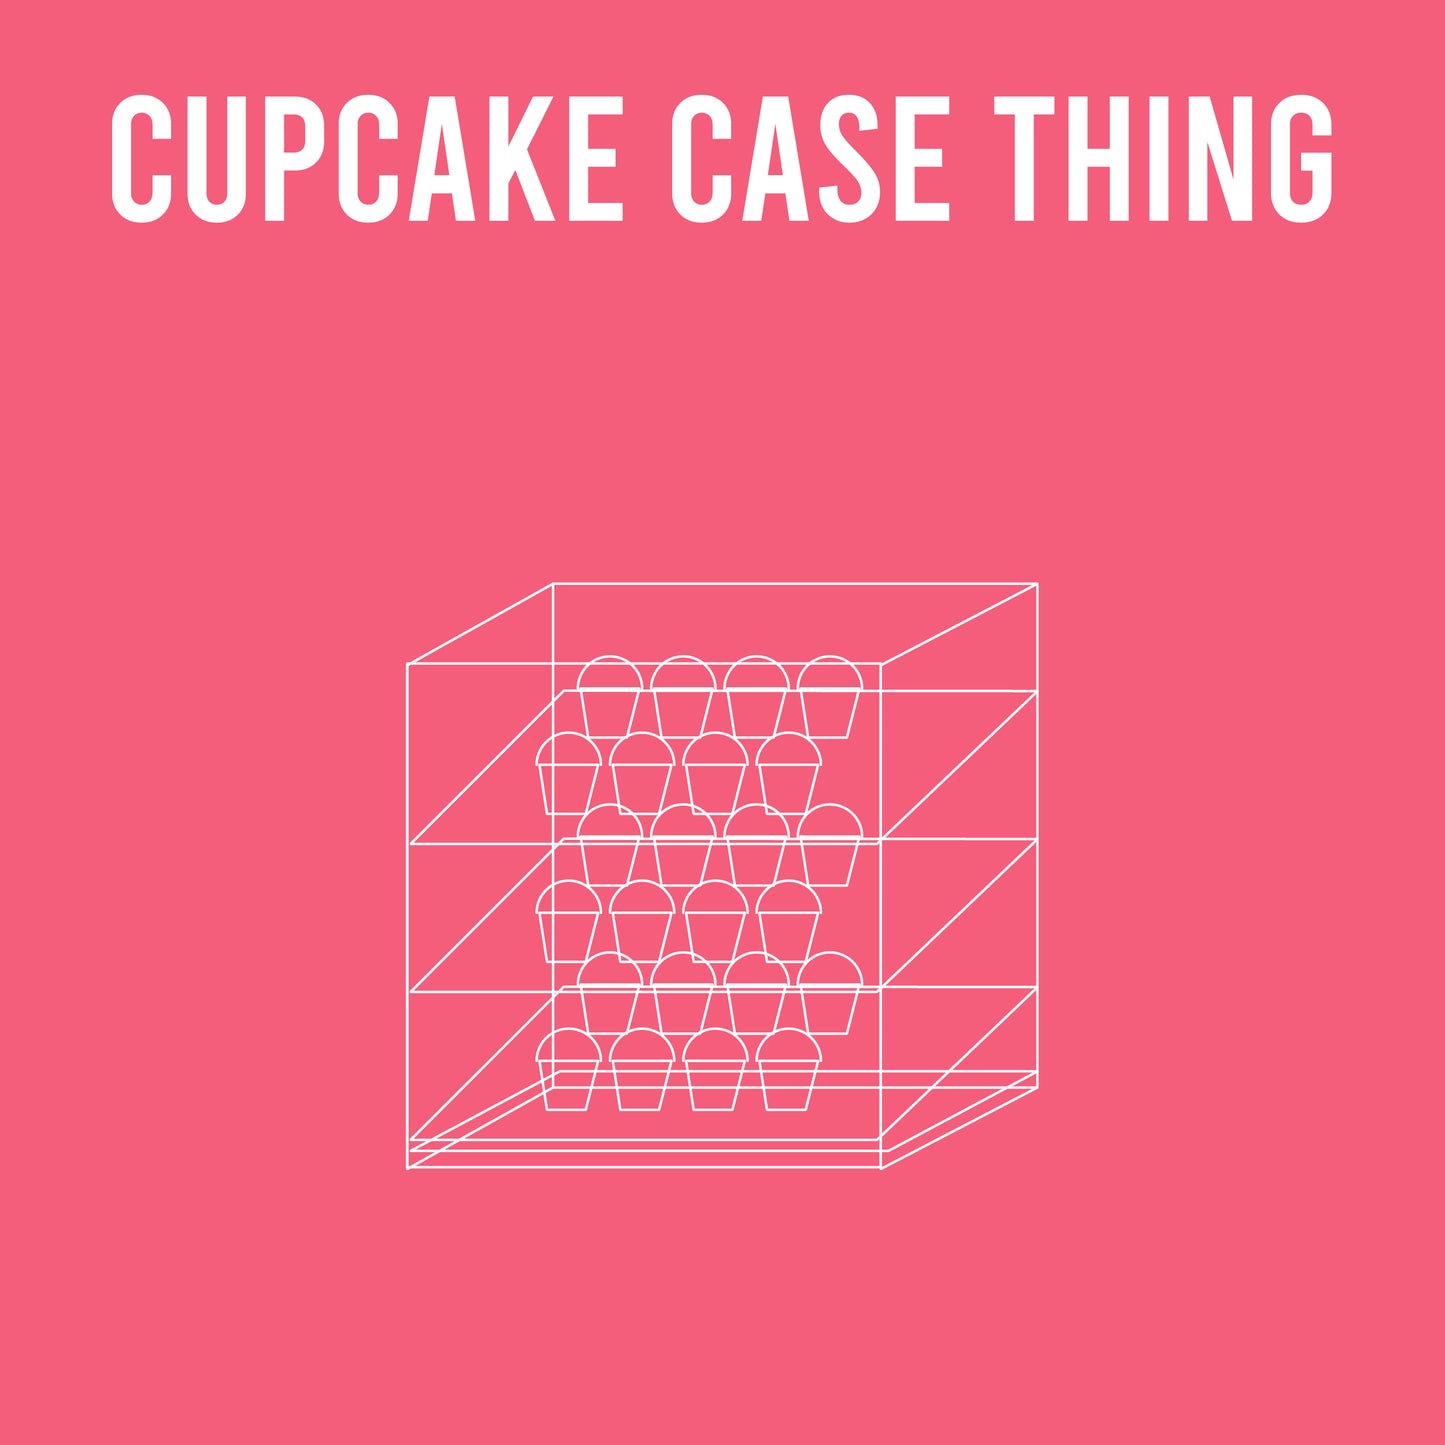 Alpha Thing: Cupcake Display Case Thing